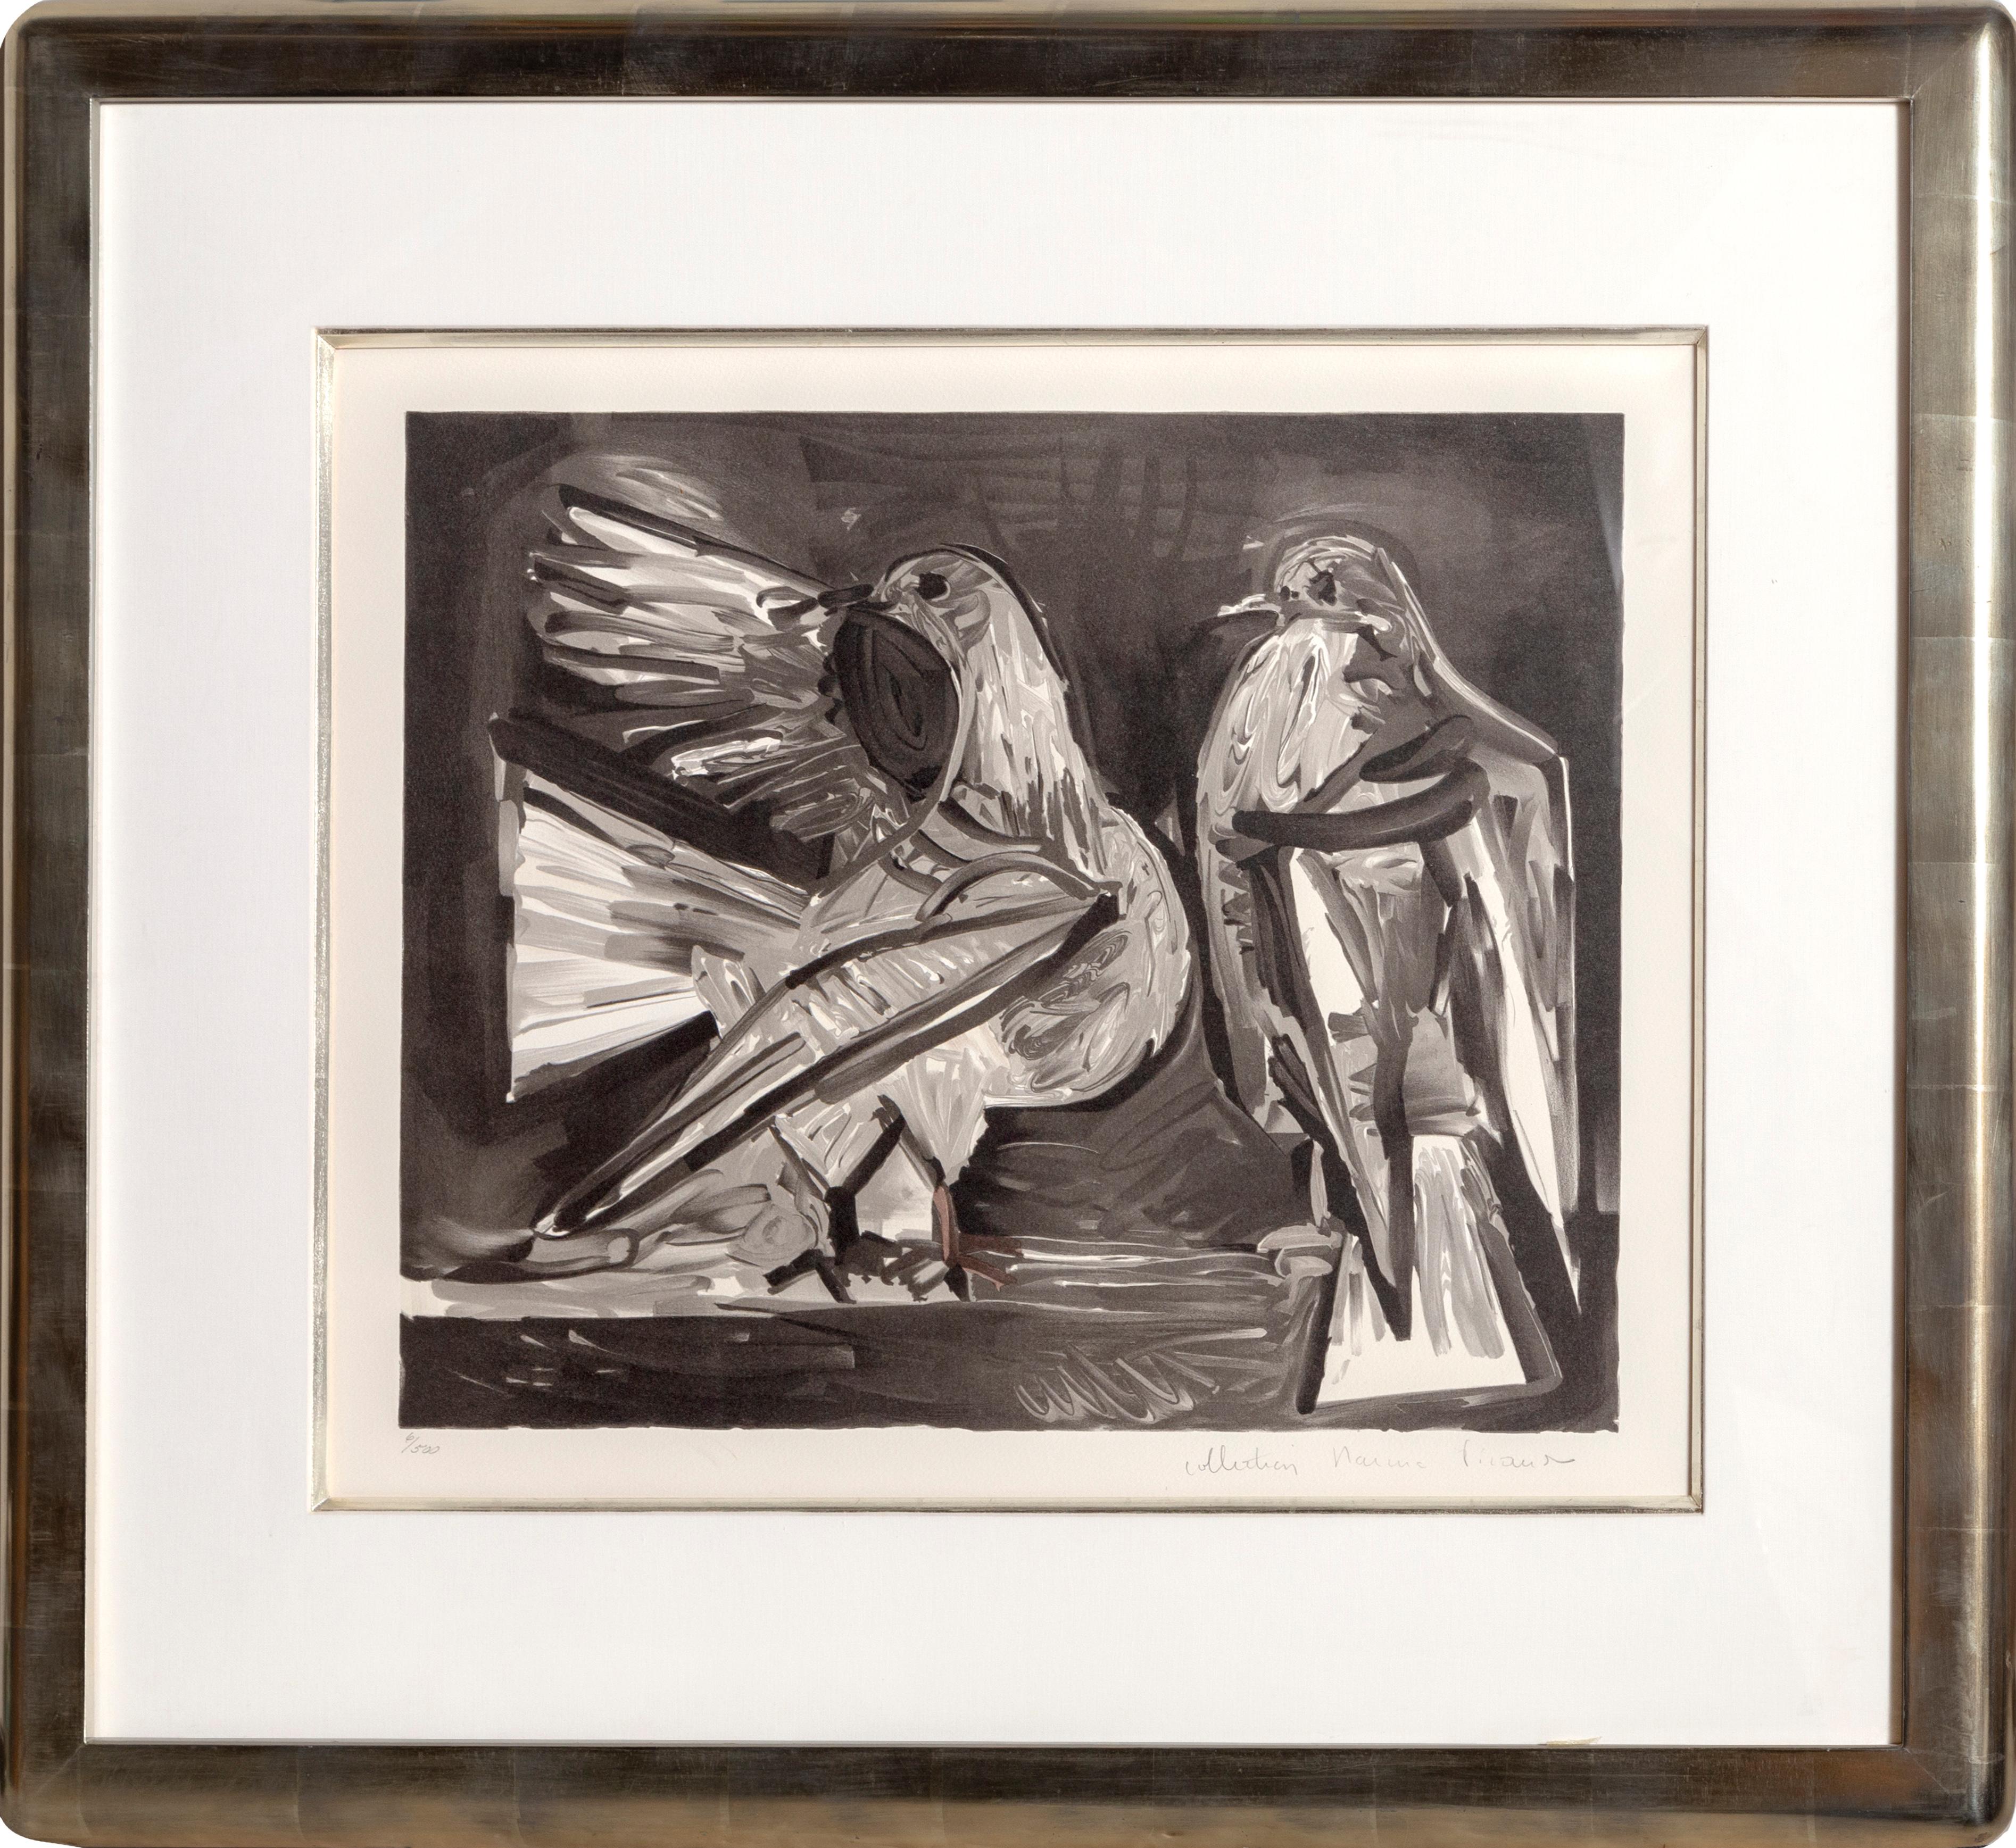 Eine Lithographie aus der Nachlasssammlung Marina Picasso nach dem Gemälde "Deux Pigeons" von Pablo Picasso.  Das Originalgemälde wurde 1960 fertiggestellt. In den 1970er Jahren, nach Picassos Tod, autorisierte Marina Picasso, seine Enkelin, die